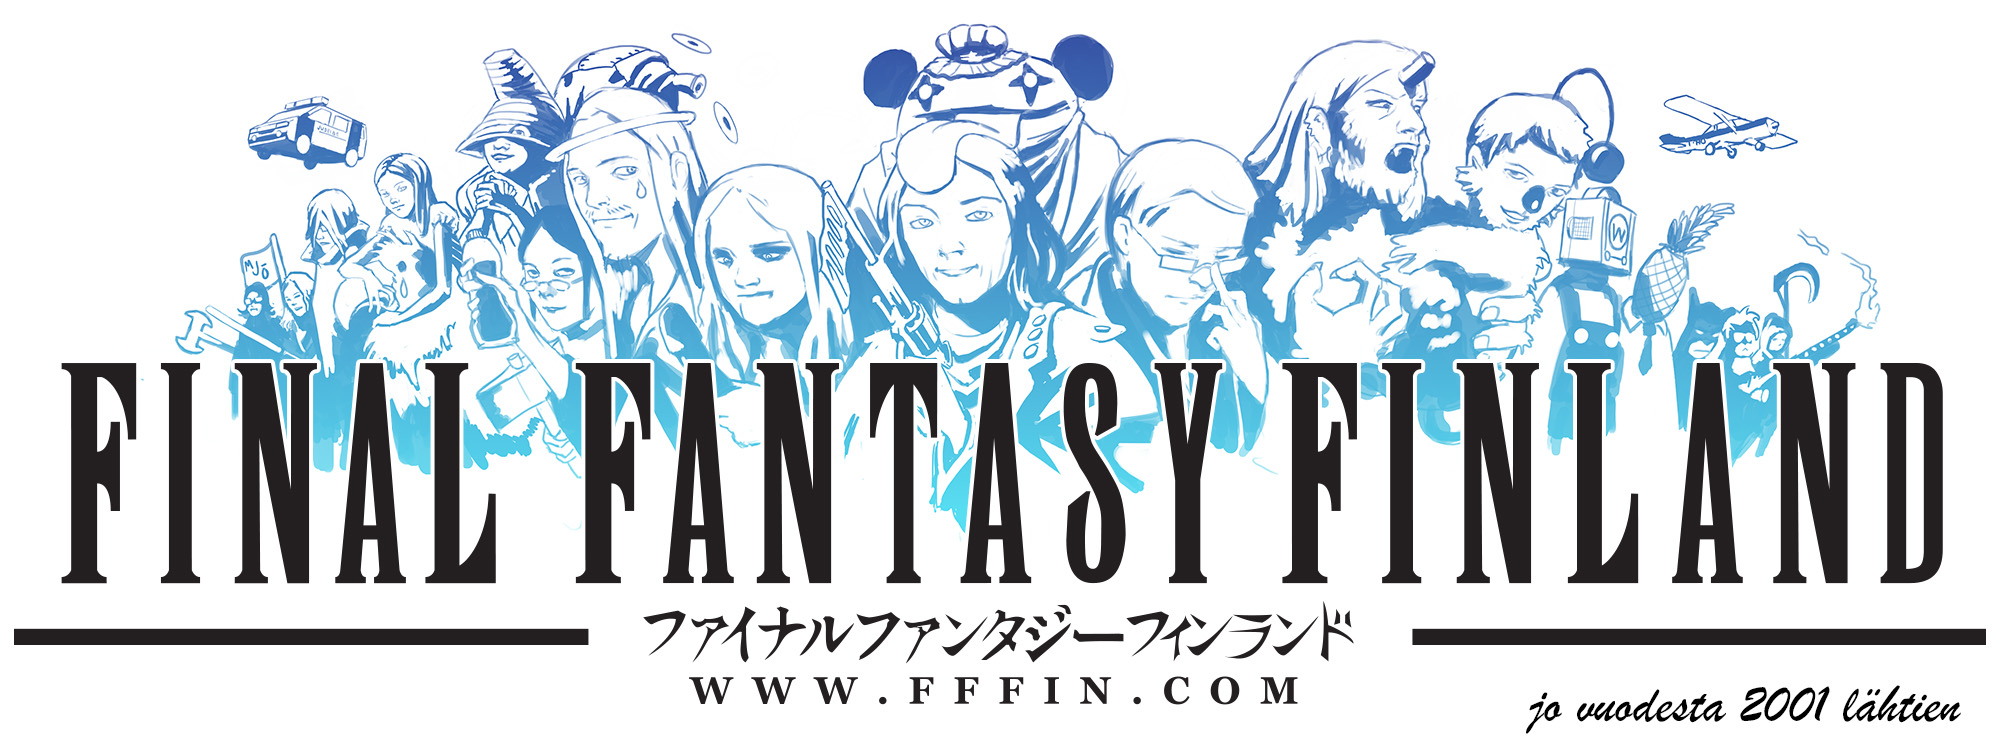 Final Fantasy Finland, jo vuodesta 2001 lähtien